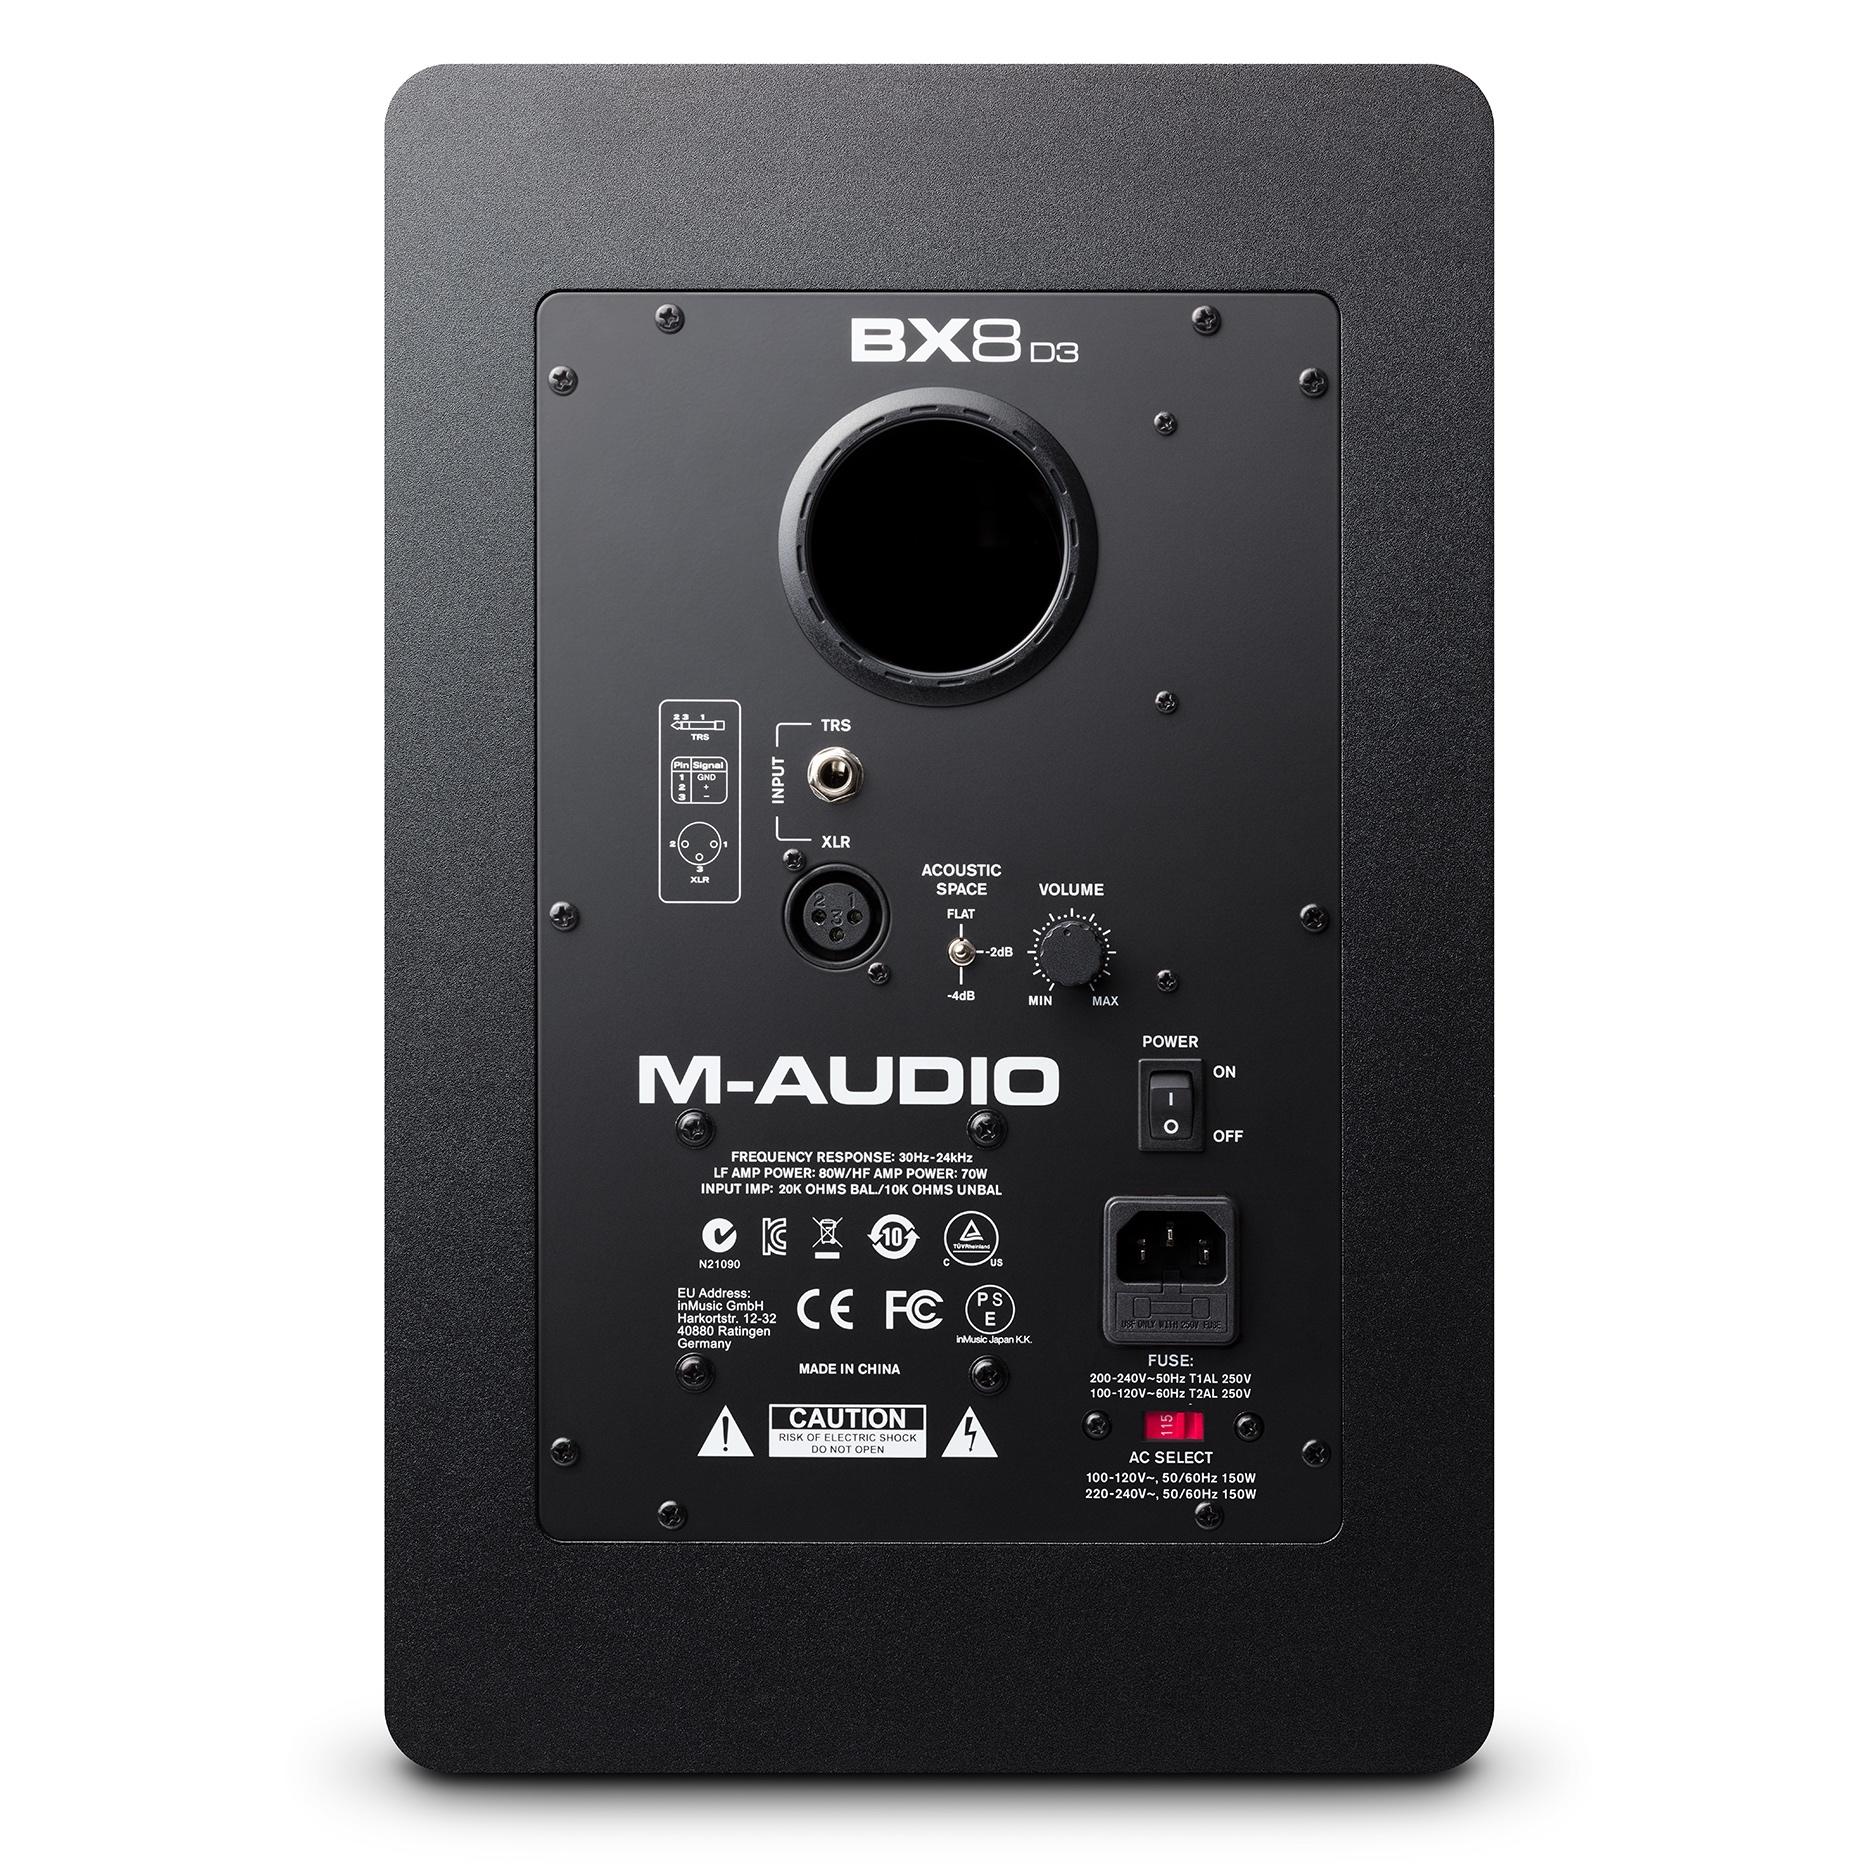 M Audio BX8 D3 back